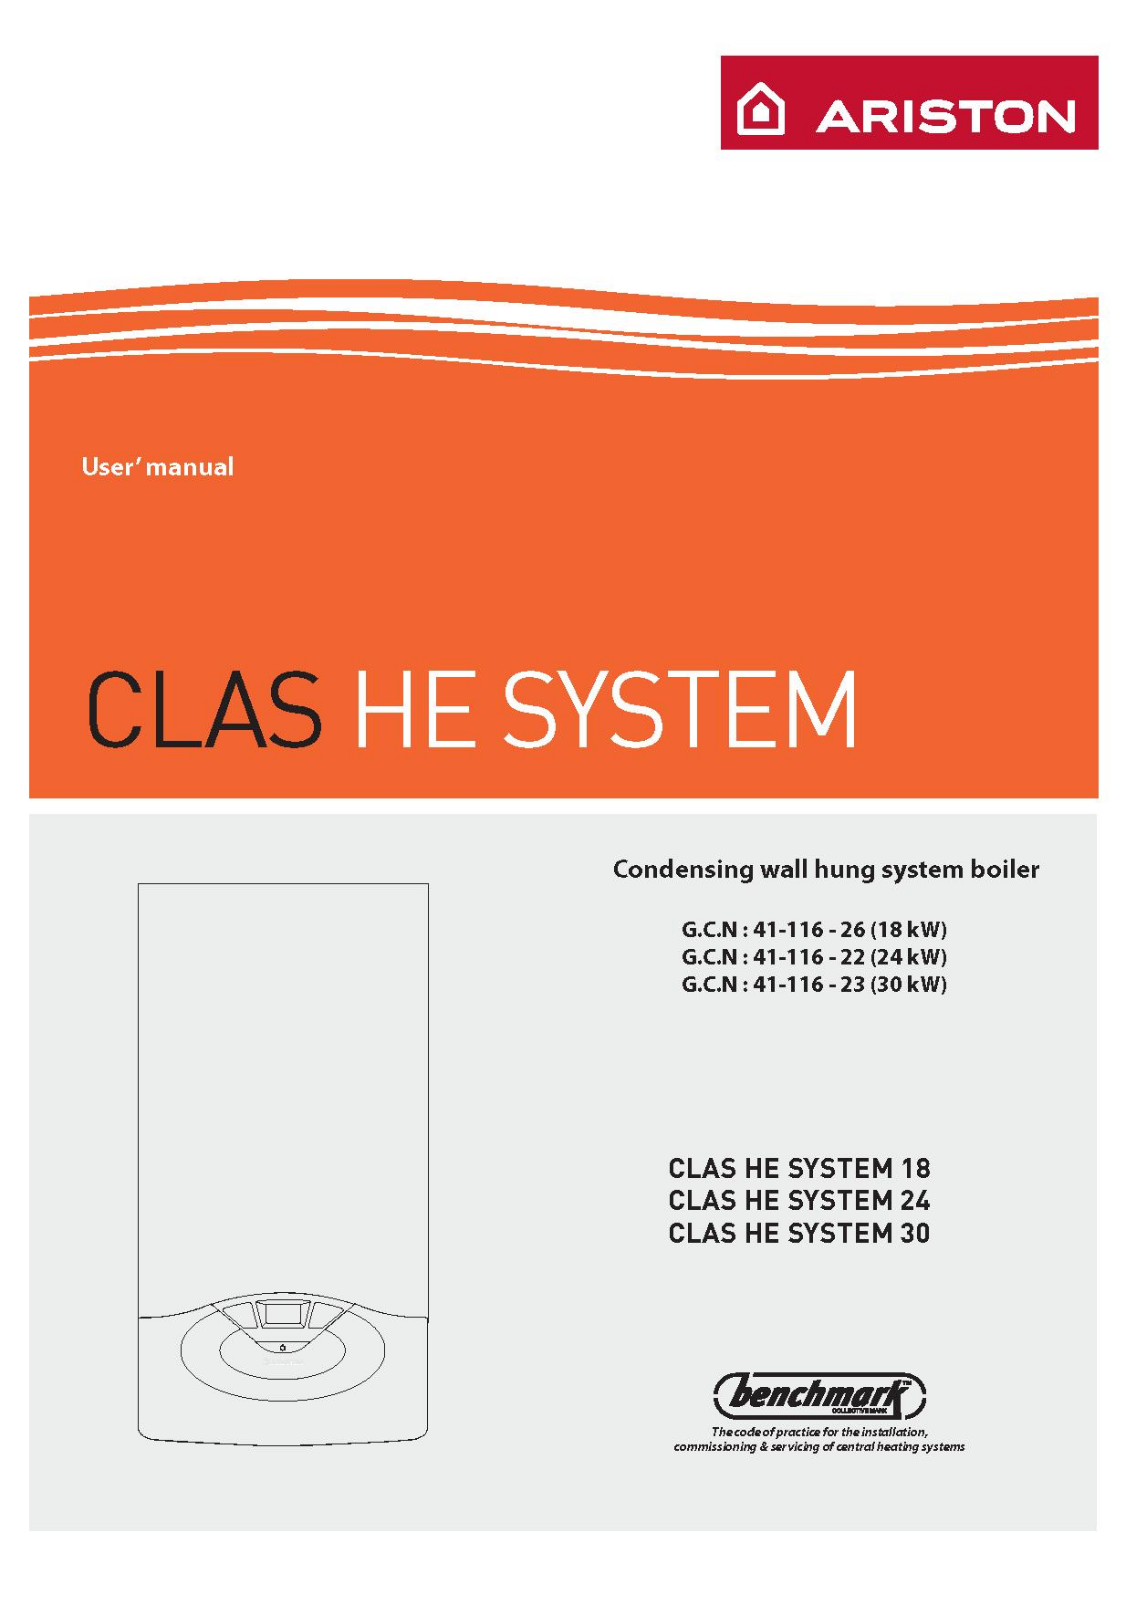 Hotpoint CLAS HE SYSTEM 30, CLAS HE SYSTEM 24, CLAS HE SYSTEM 18 User Manual